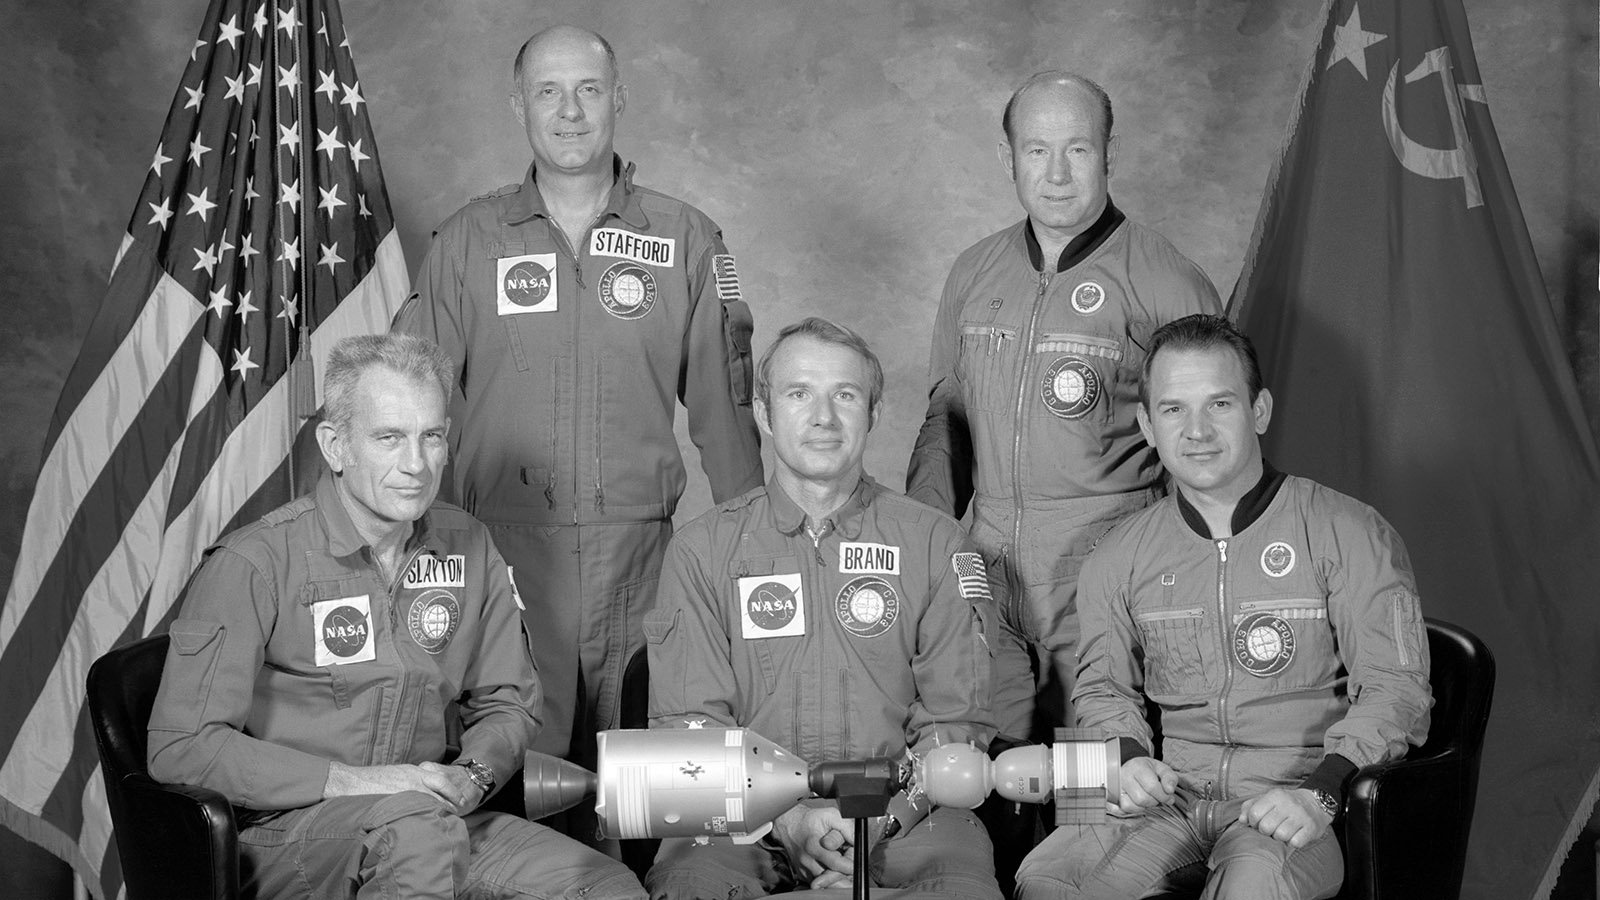 17 июля 1975 года. Союз Аполлон 1975. Экипаж Союз-Аполлон 1975. Стыковка космических кораблей Союз 19 и Аполлон. Экспериментальный полет Союз Аполлон 1975.